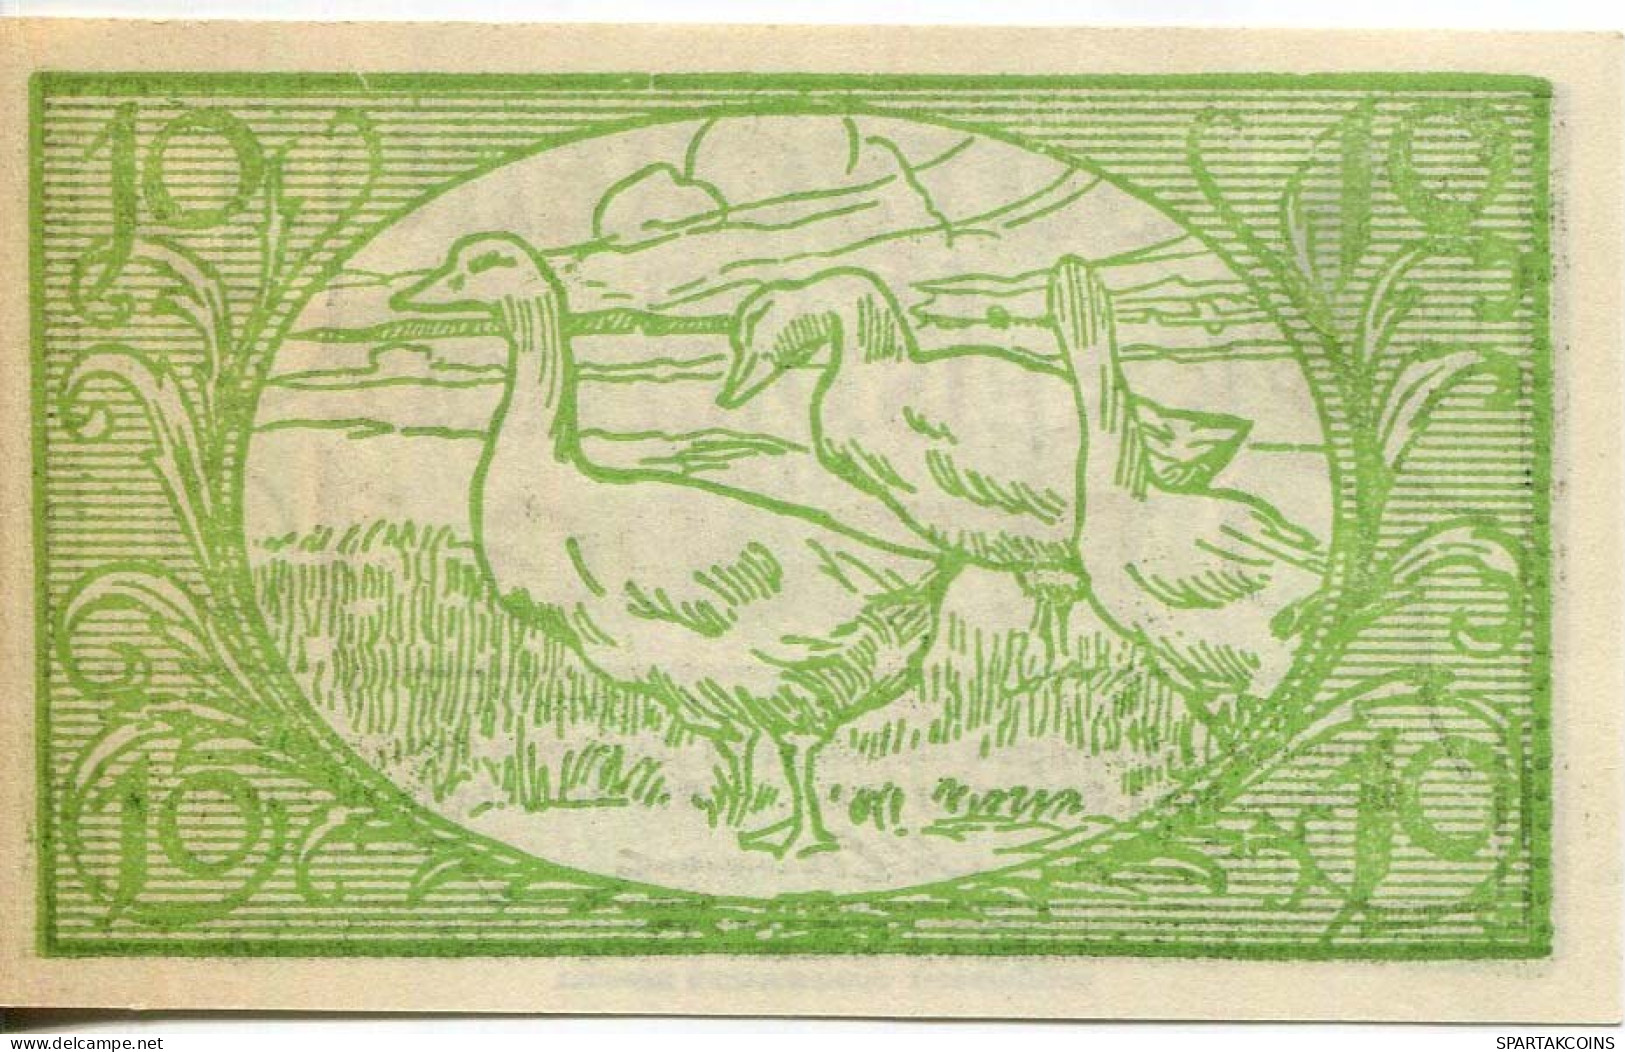 10 PFENNIG 1920 Stadt DIEPHOLZ Hanover DEUTSCHLAND Notgeld Papiergeld Banknote #PL915 - [11] Local Banknote Issues